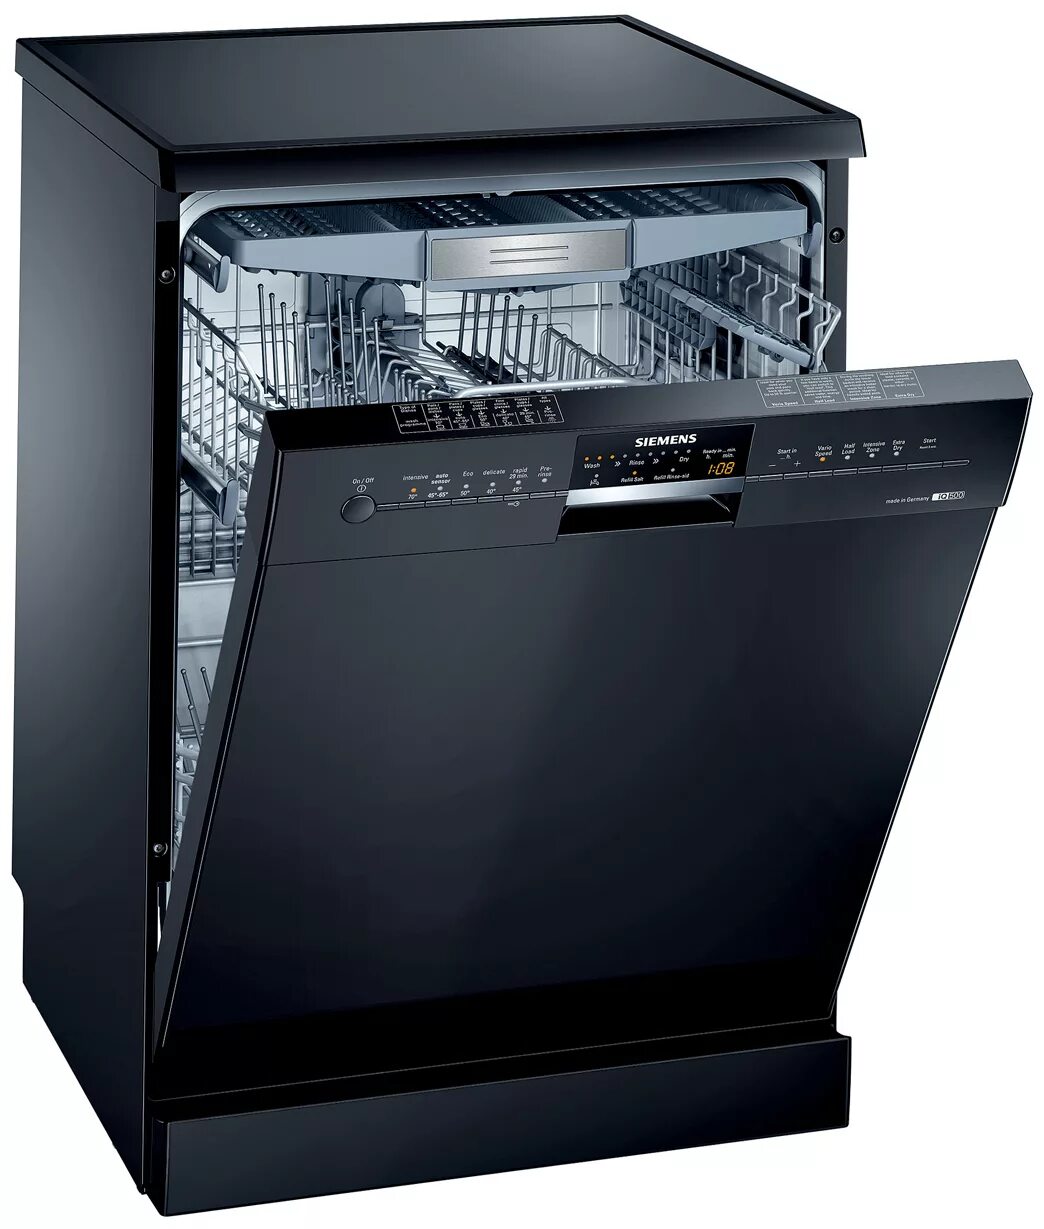 Эльдорадо купить посудомоечную. Посудомоечная машина Siemens SN 25m888. Siemens 500 посудомоечная машина. Siemens посудомоечная машина sn44d201sk/34. Посудомойка Борк встраиваемая.